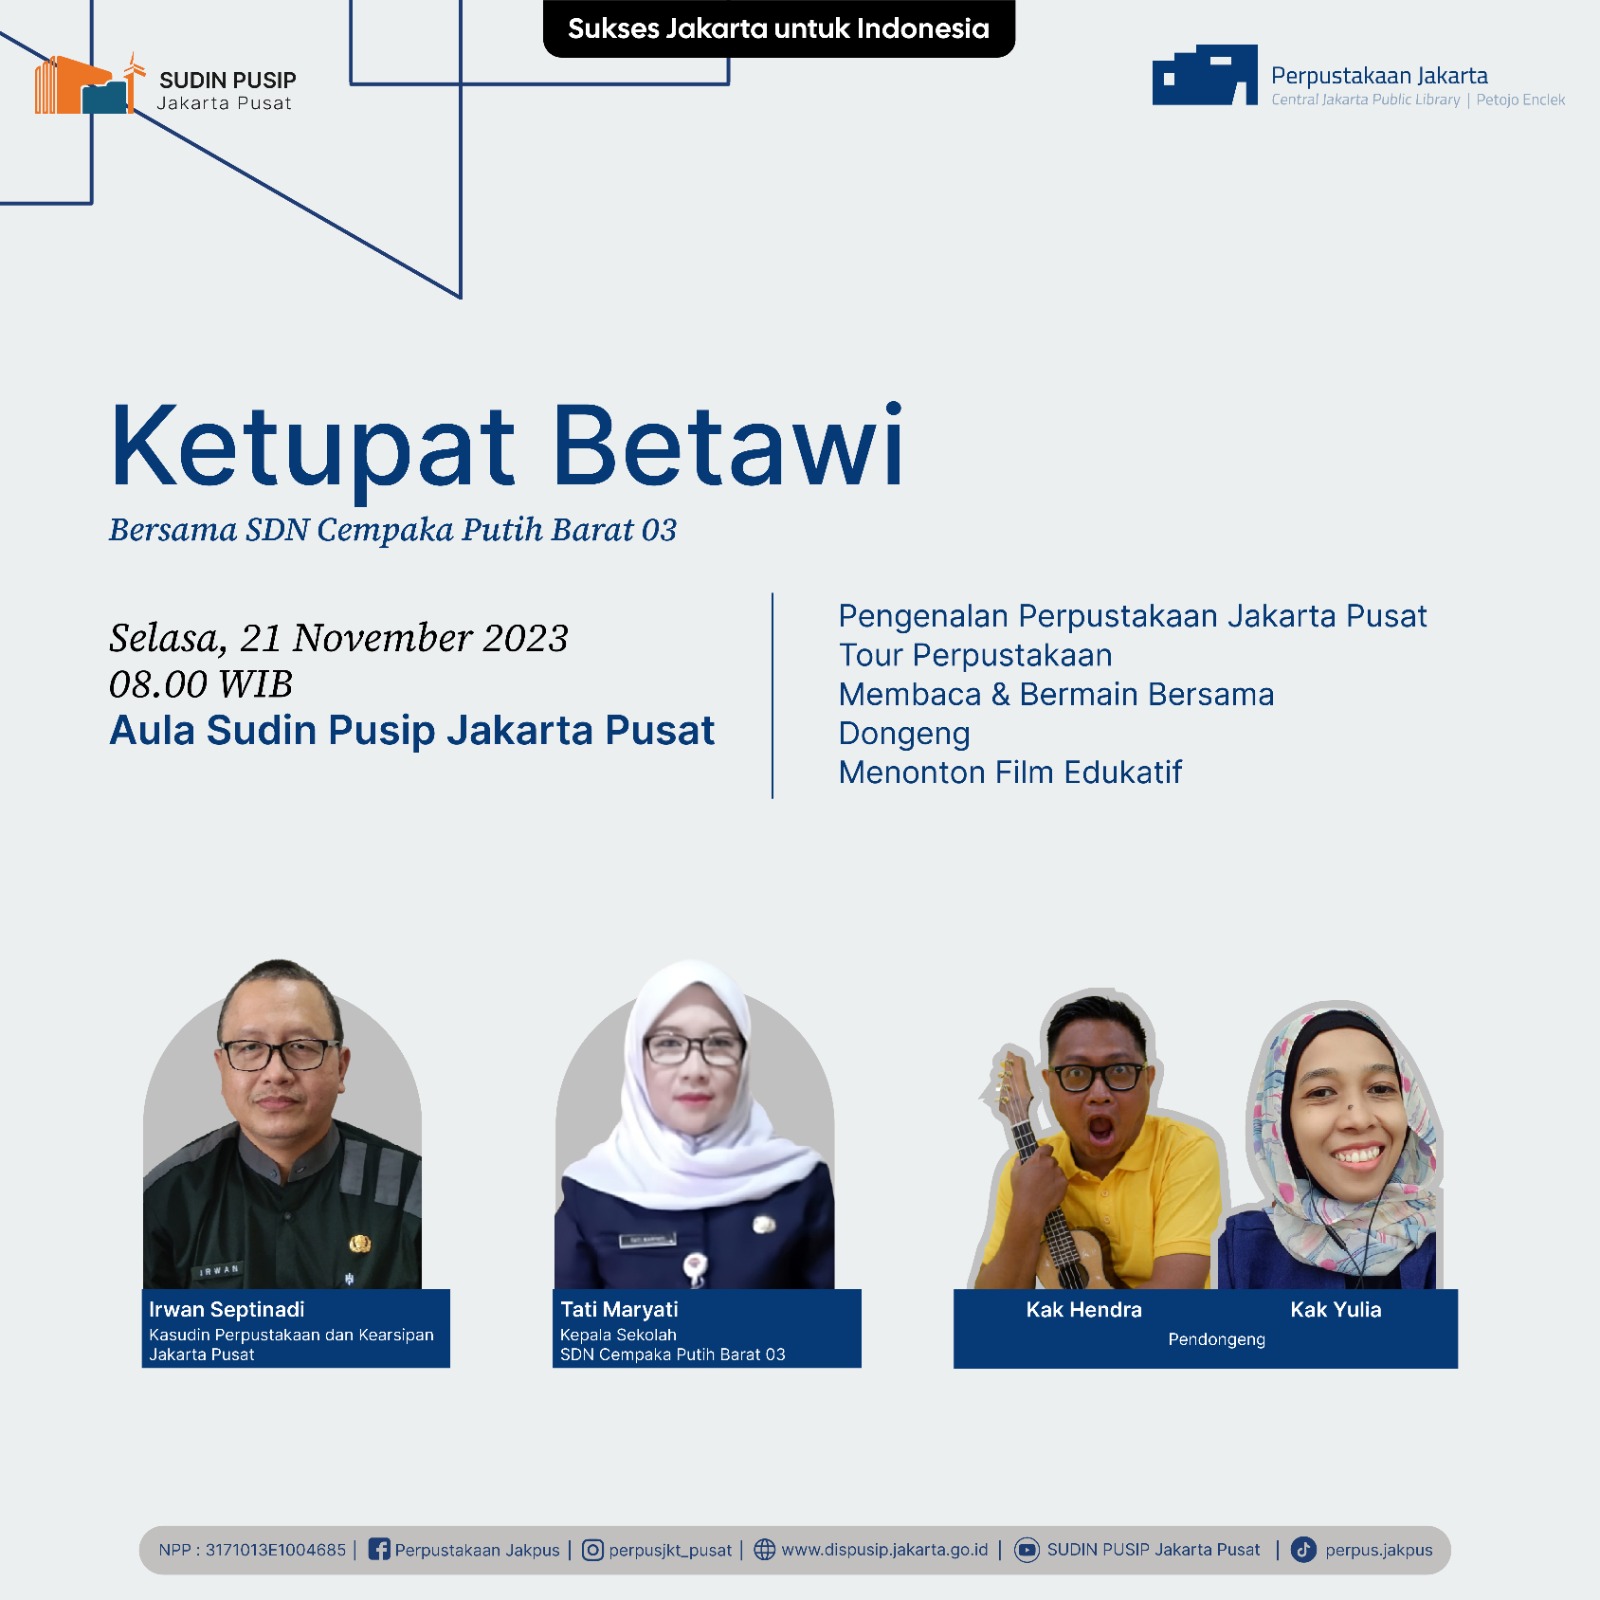 Ketupat Betawi Bersama SDN Cempaka Putih Barat 03 Di Aula Sudin Pusip Jakarta Pusat